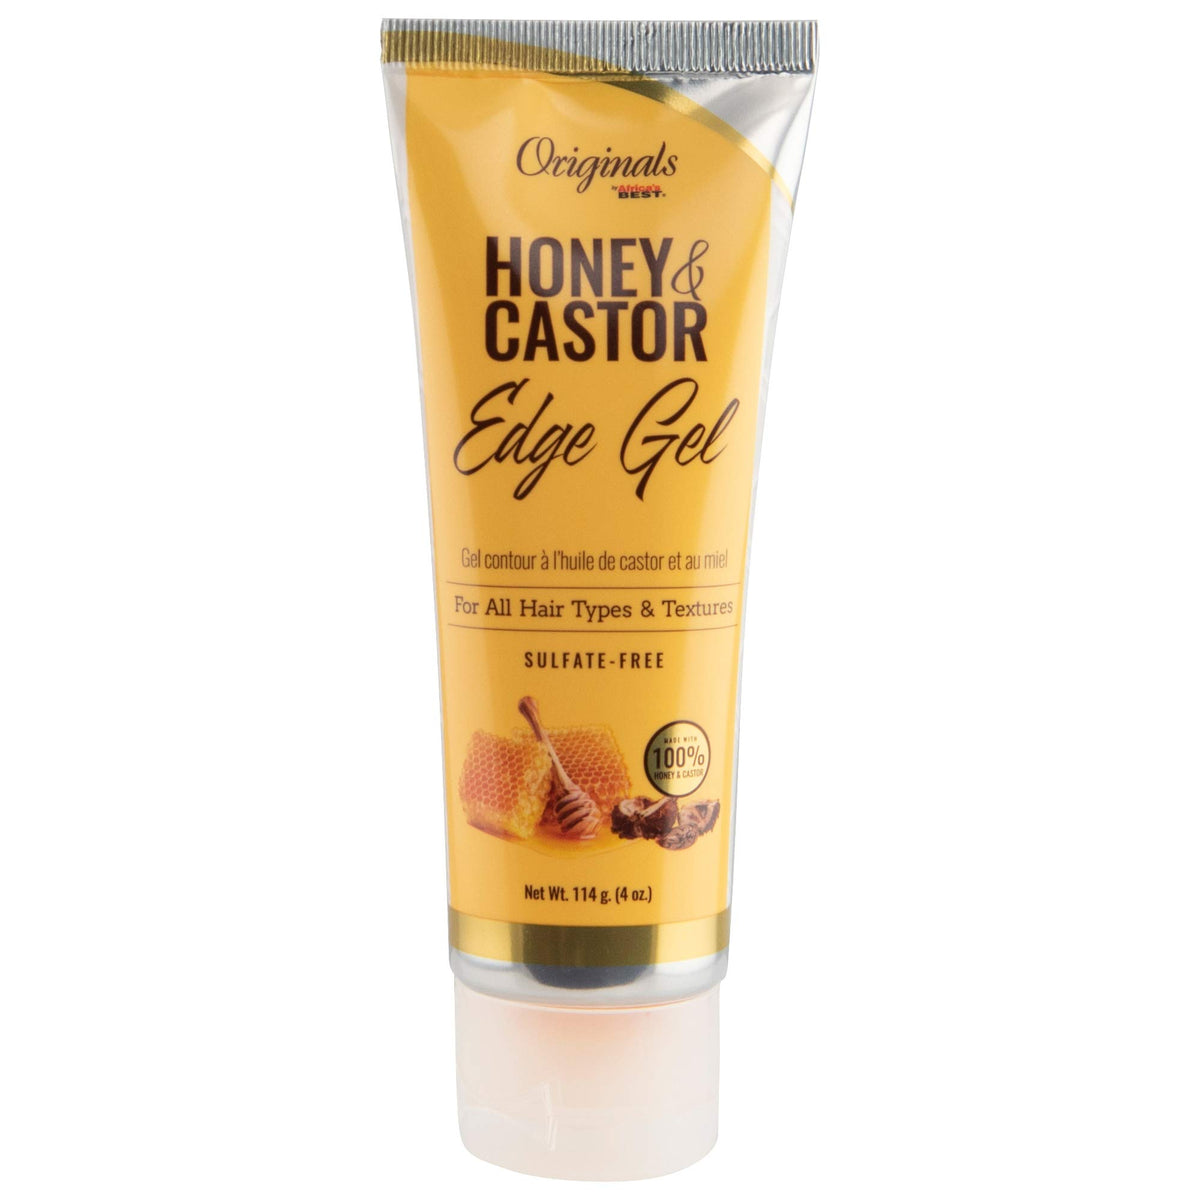 Originals Honey & Castor Edge Gel